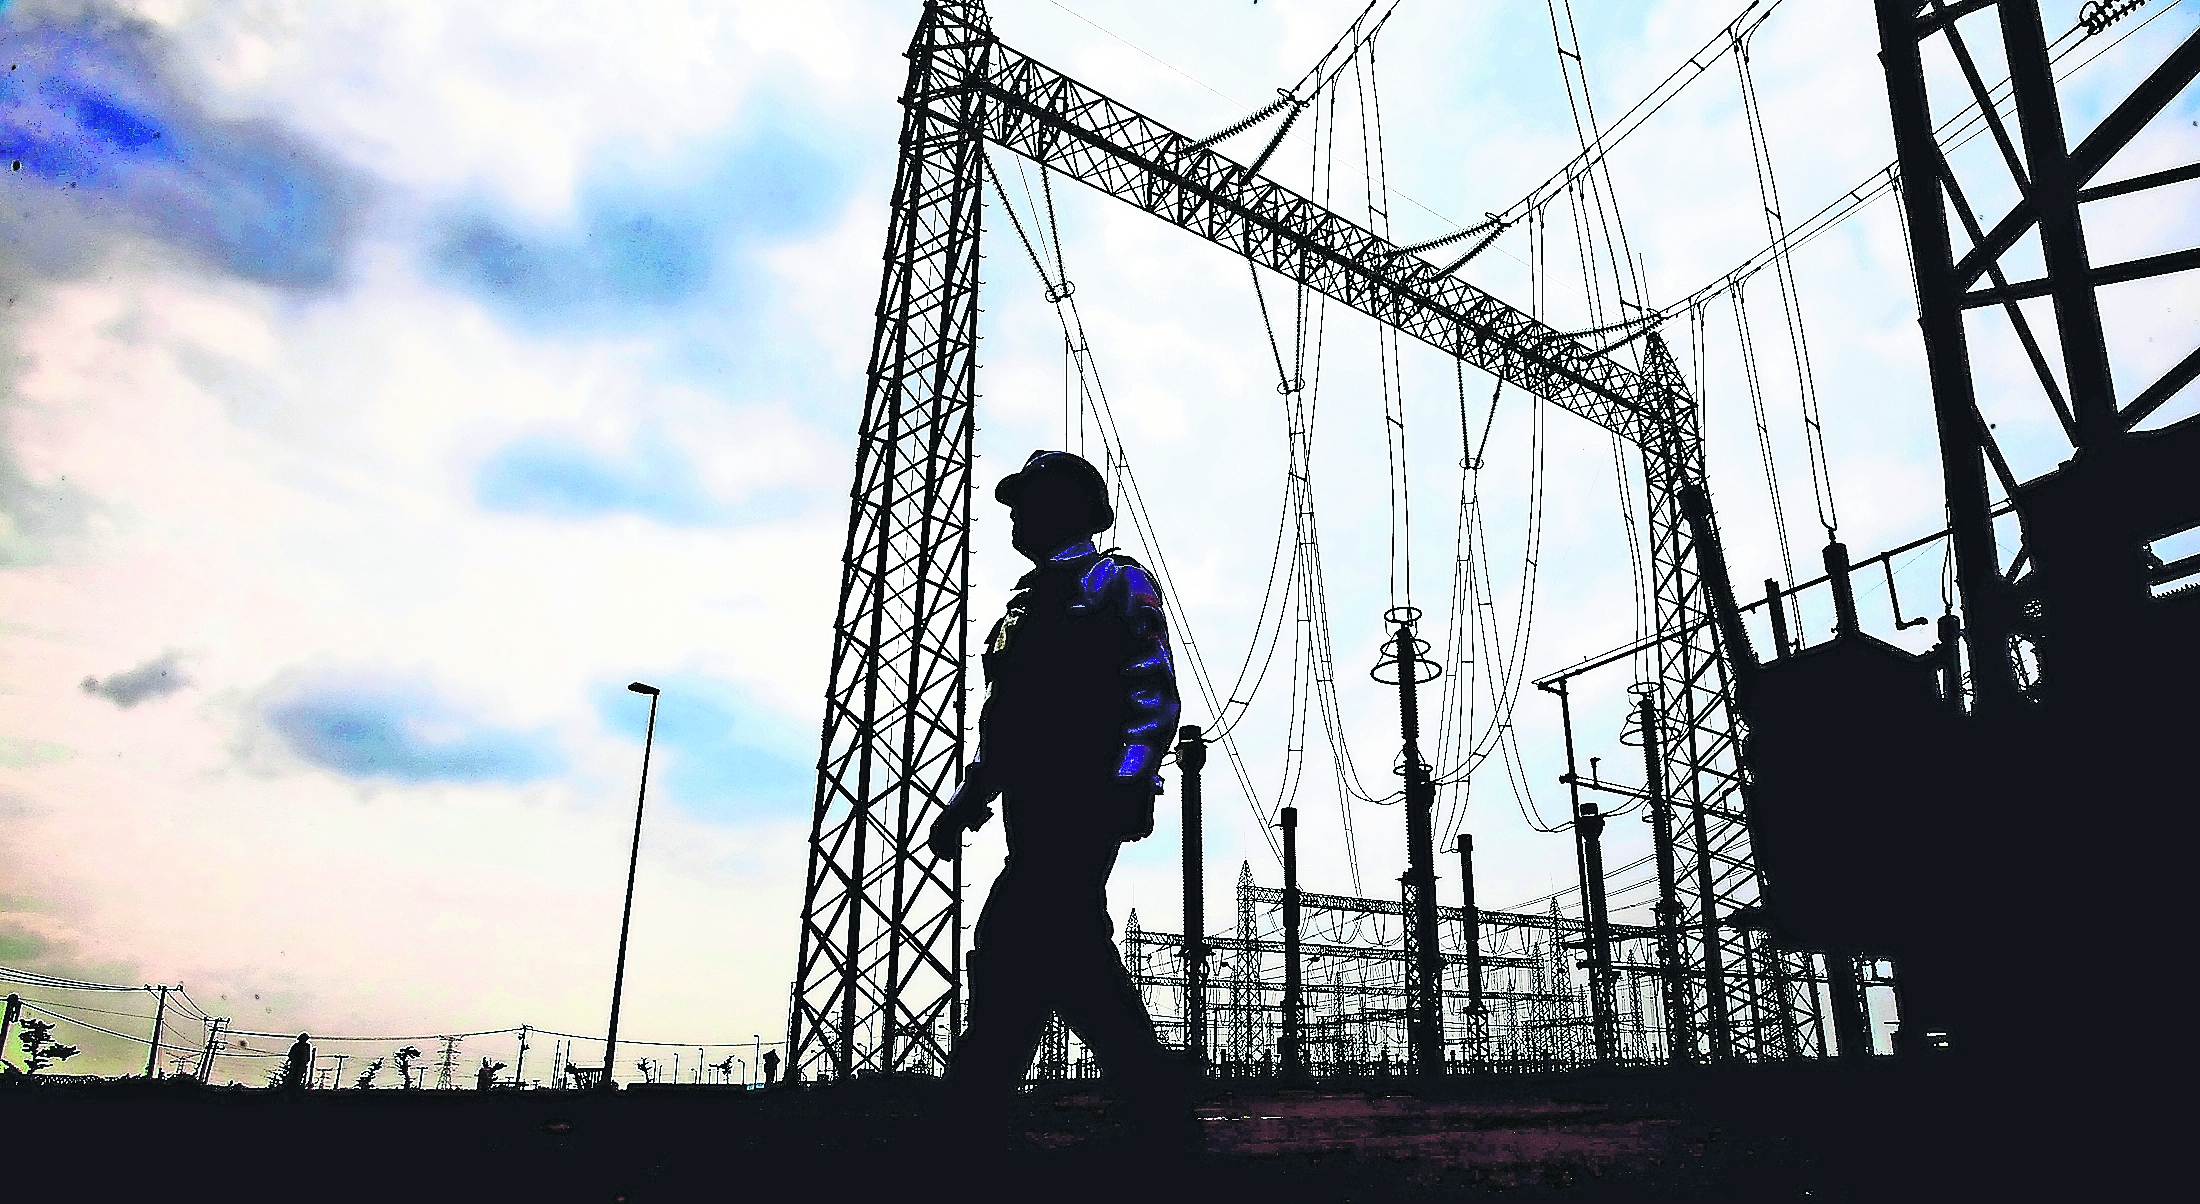 Industriales esperan bonificación por tarifas eléctricas